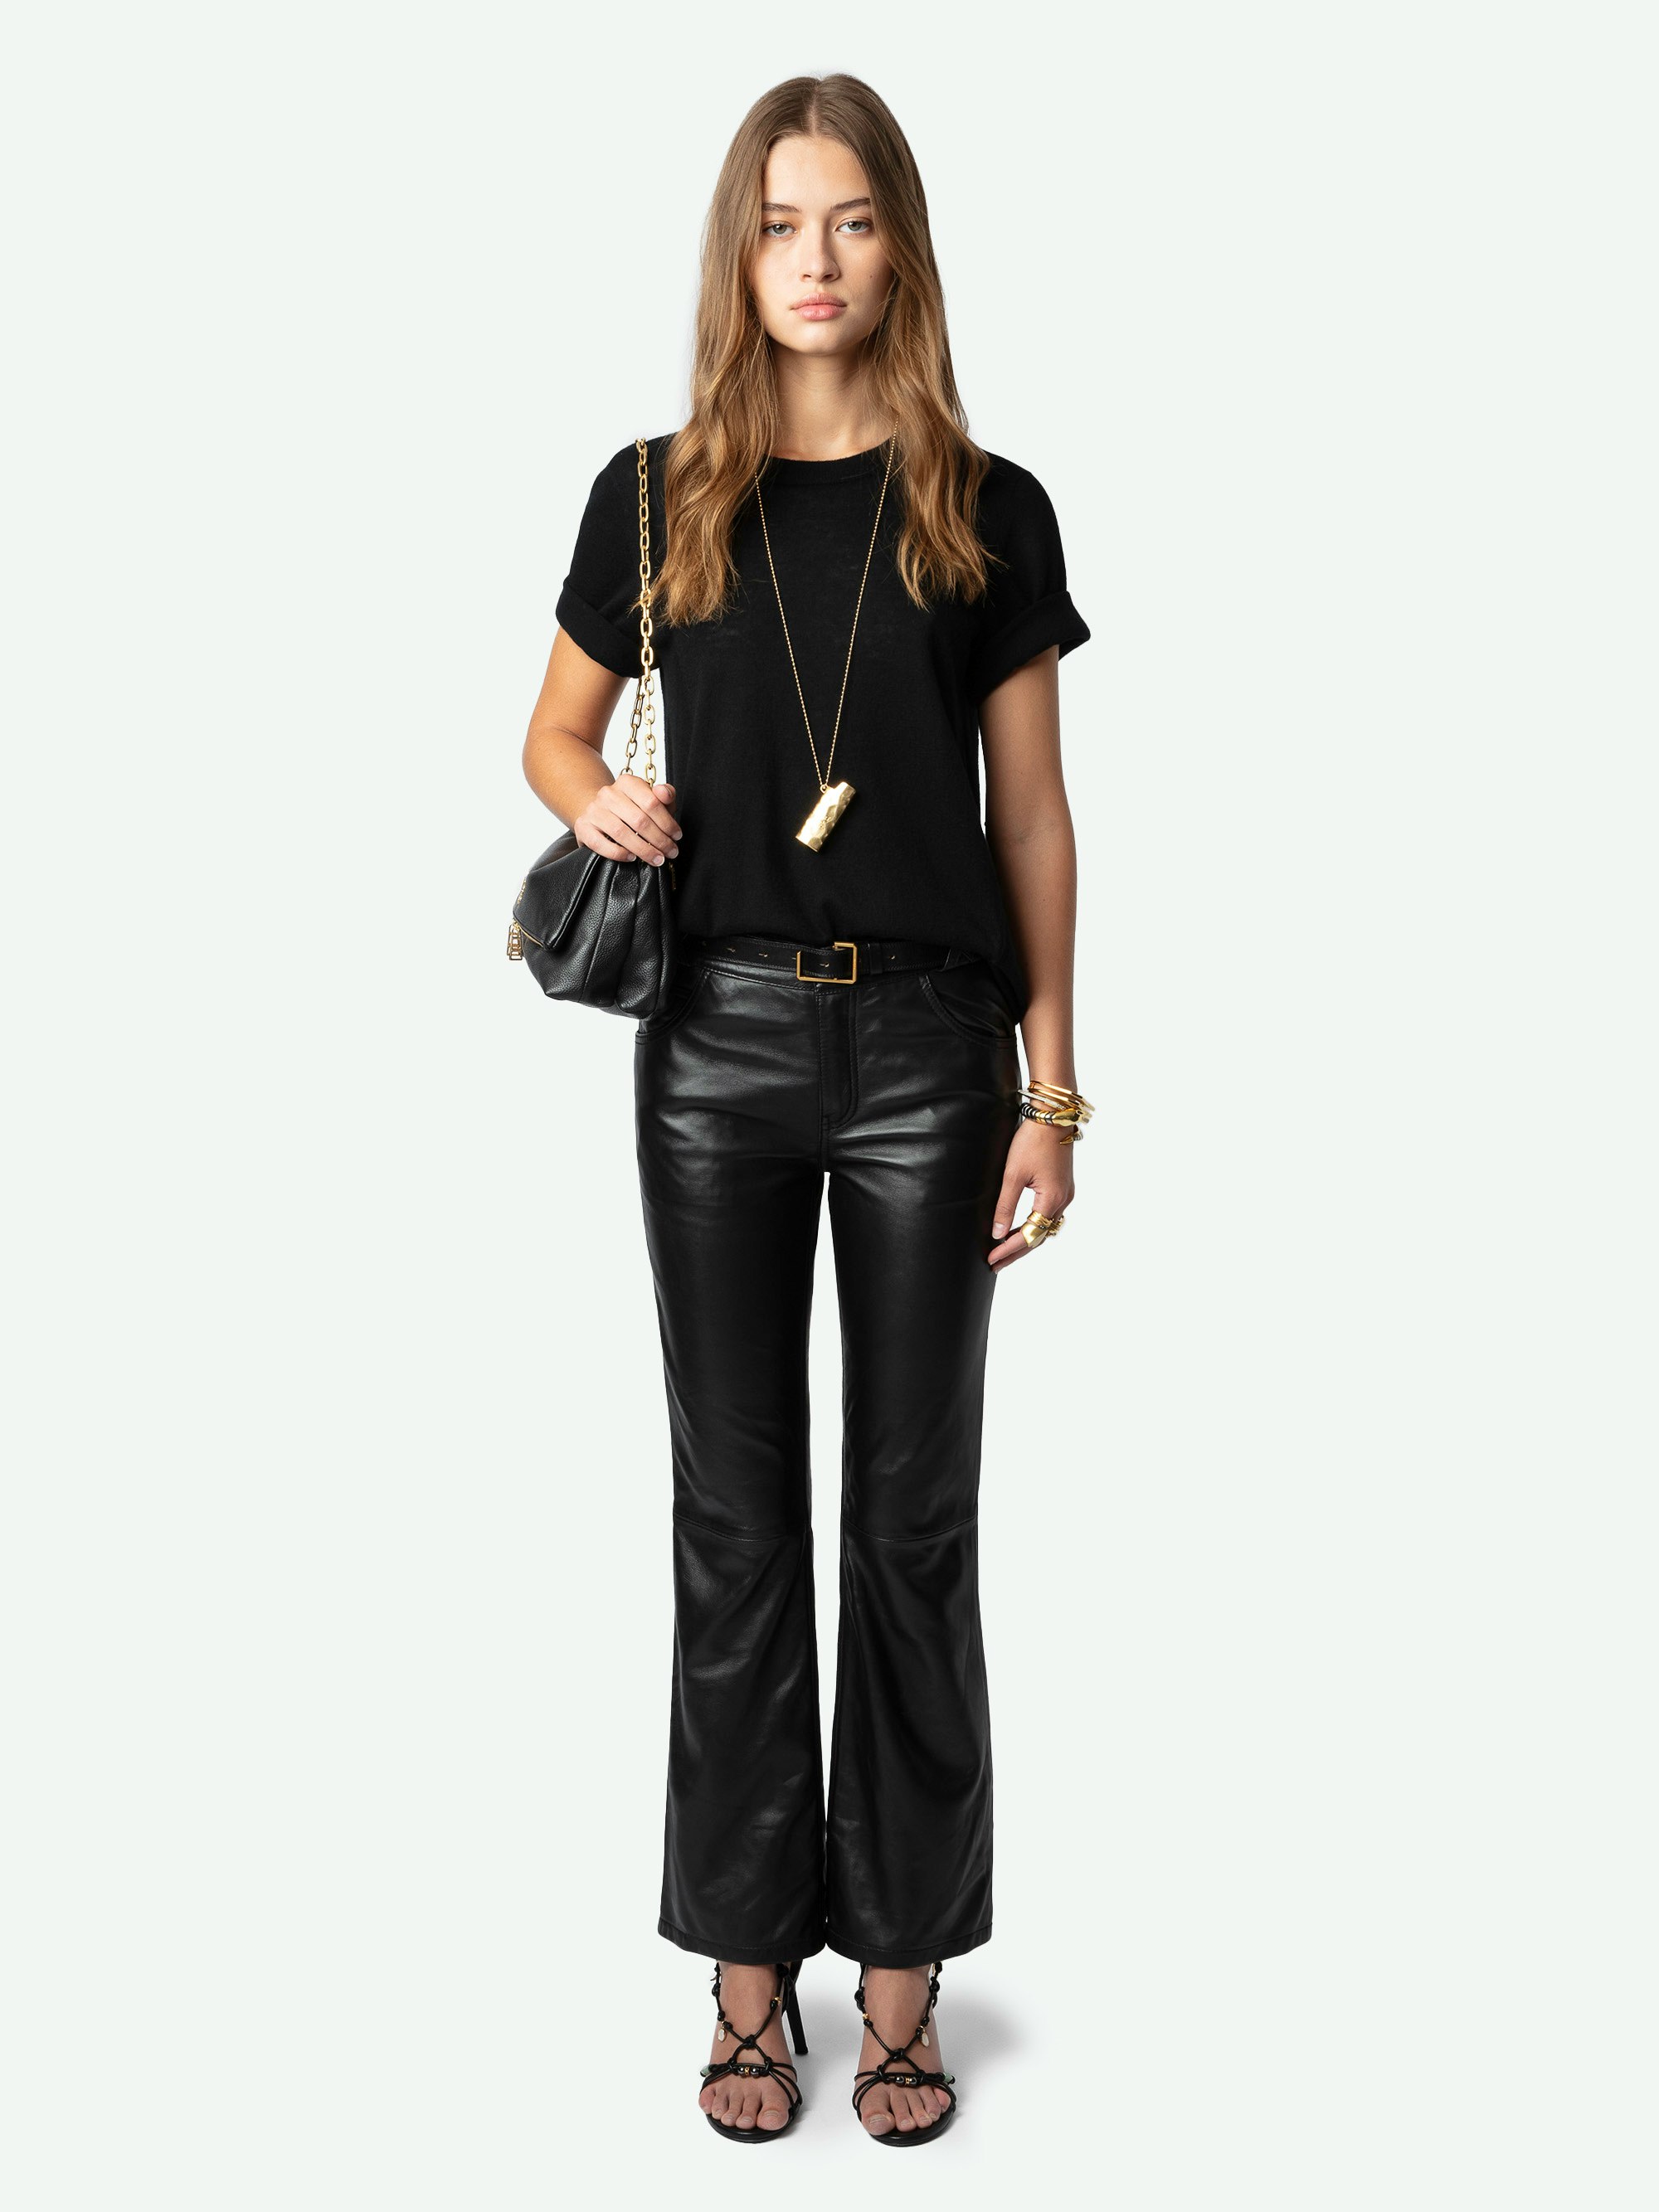 Hose Push Leder - Ausgestellte, schwarze Hose aus Glattleder mit Taschen und geflochtenen Details an den Gürtelschlaufen.